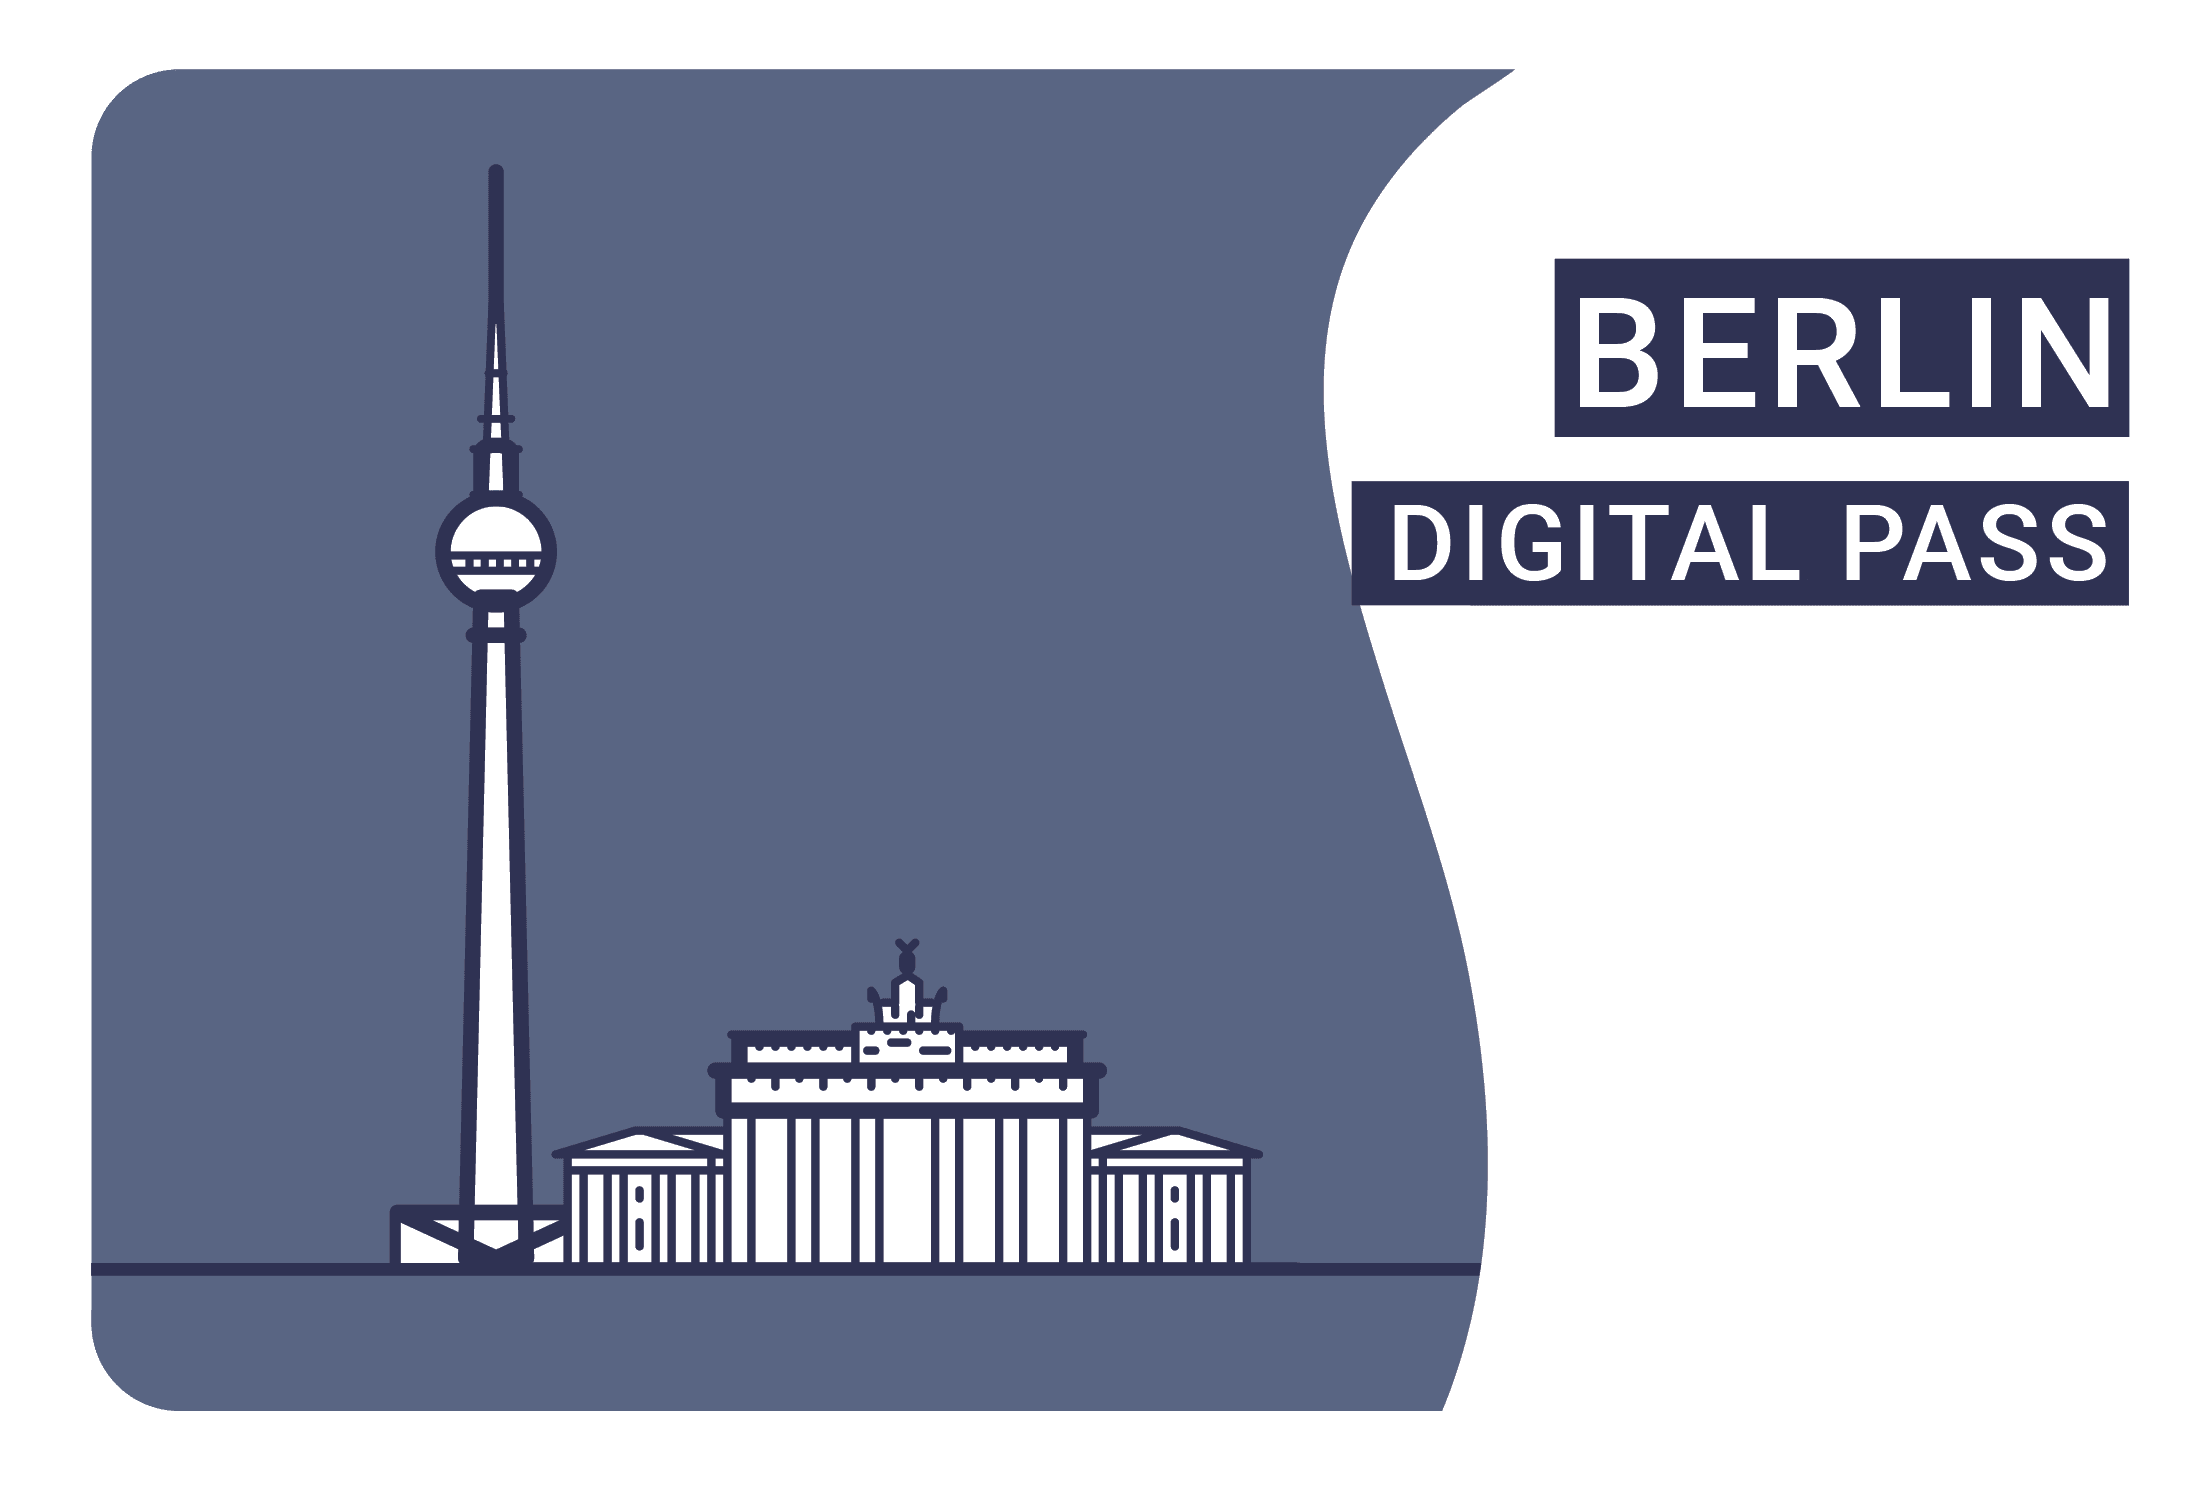 berlin pass